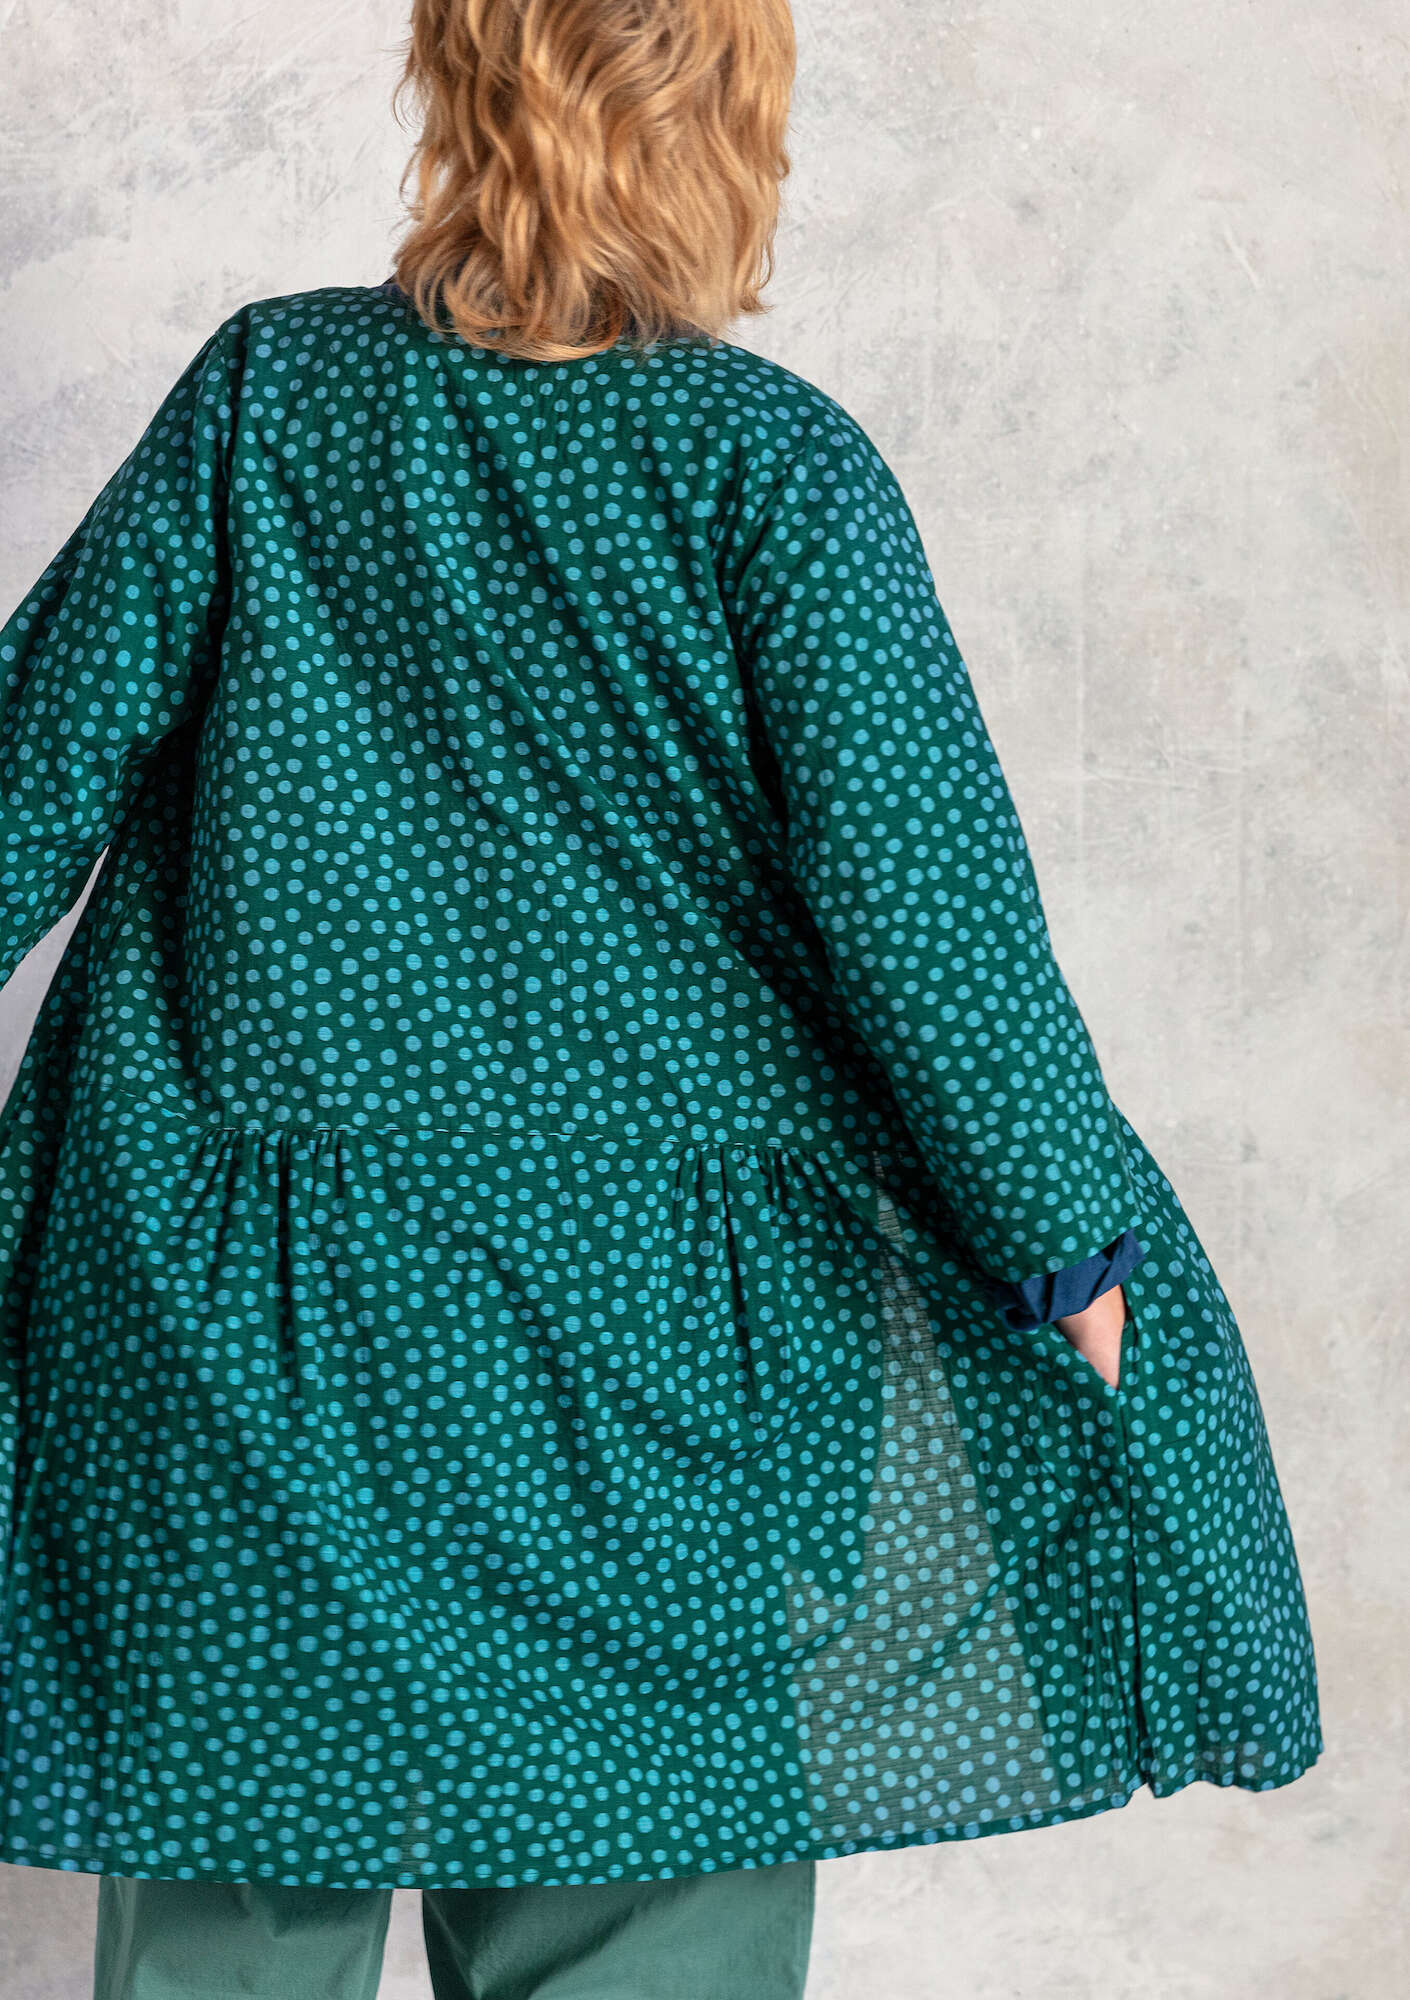 Vævet kjole  Alice  i økologisk bomuld mørkegrøn/mønstret